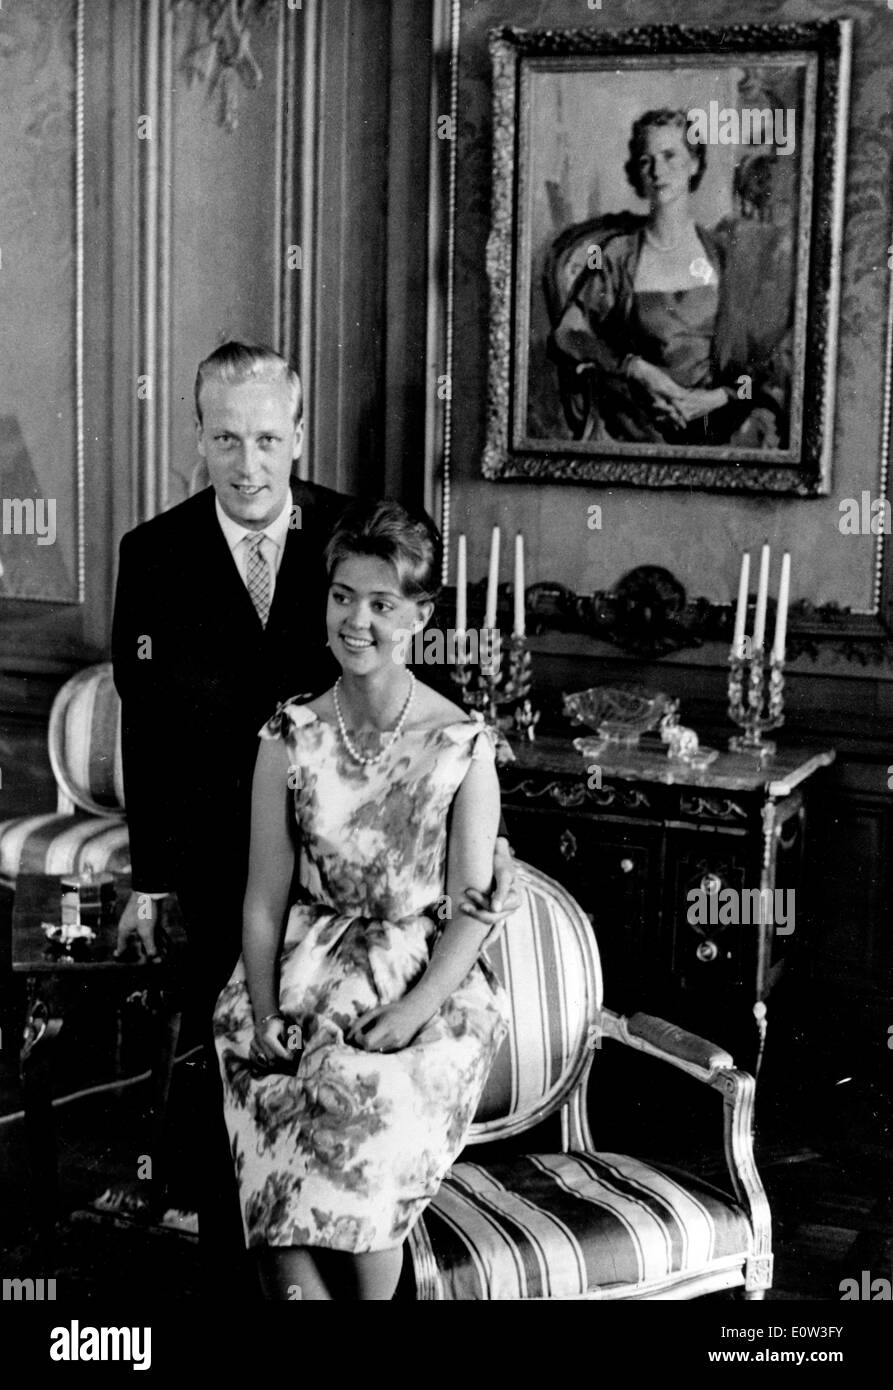 La principessa santa Brigida e suo marito Principe Johann Georg presso il Royal Palace Foto Stock